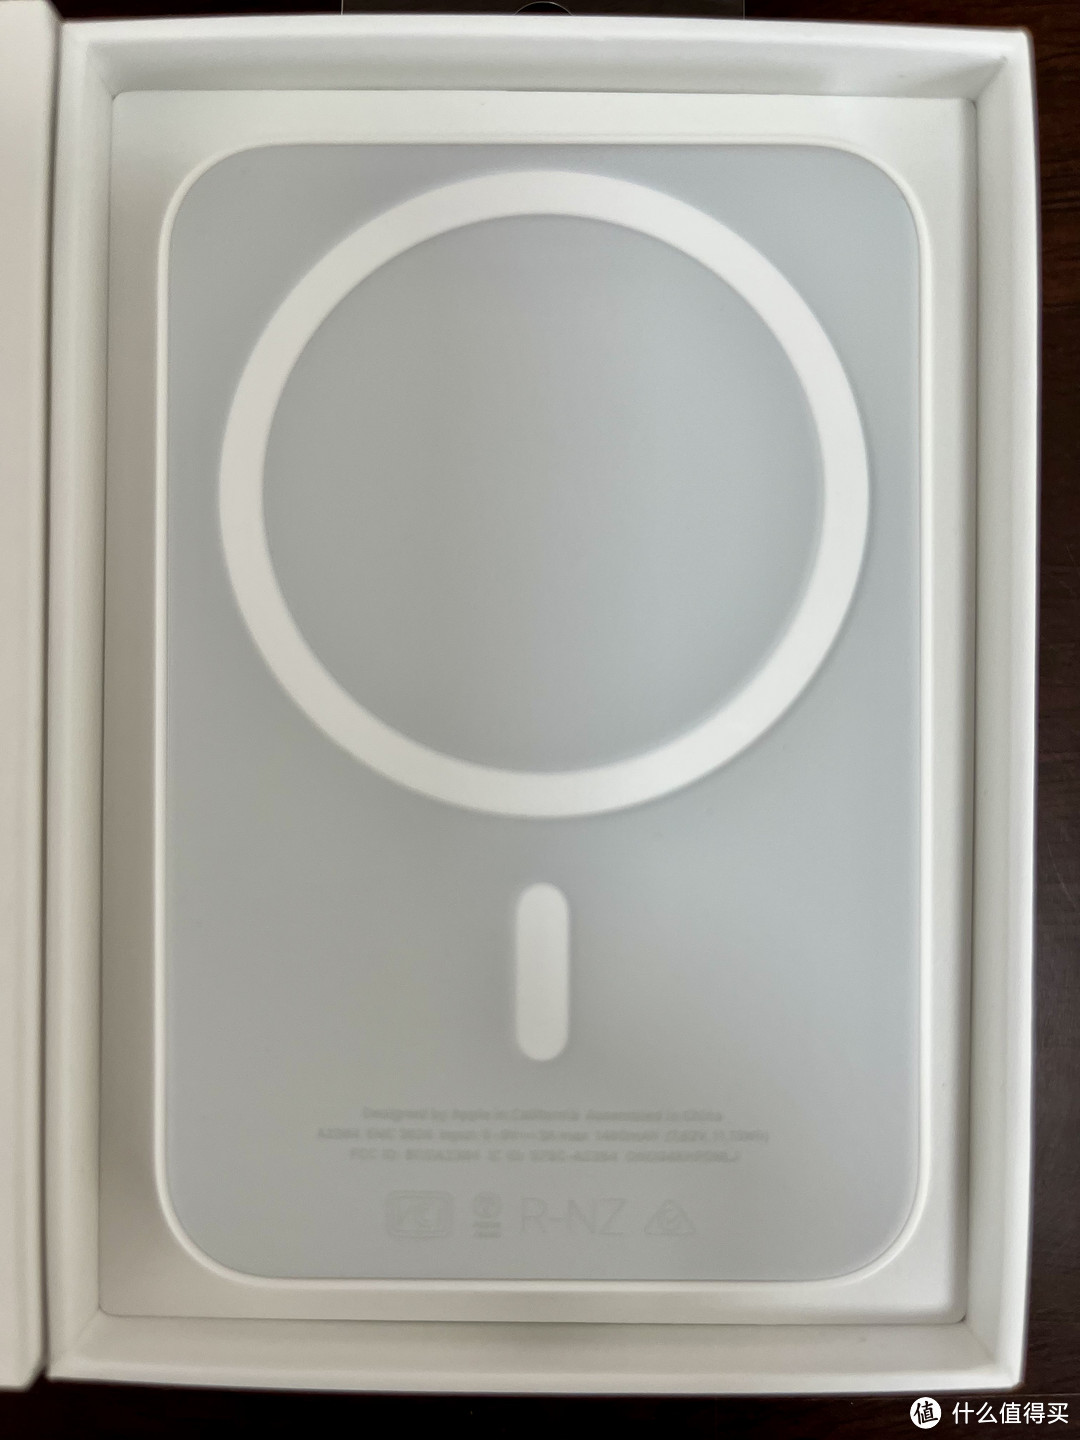 『果粉秘籍』分享一种苹果无线充电底座+便携充电宝二合一解决方案